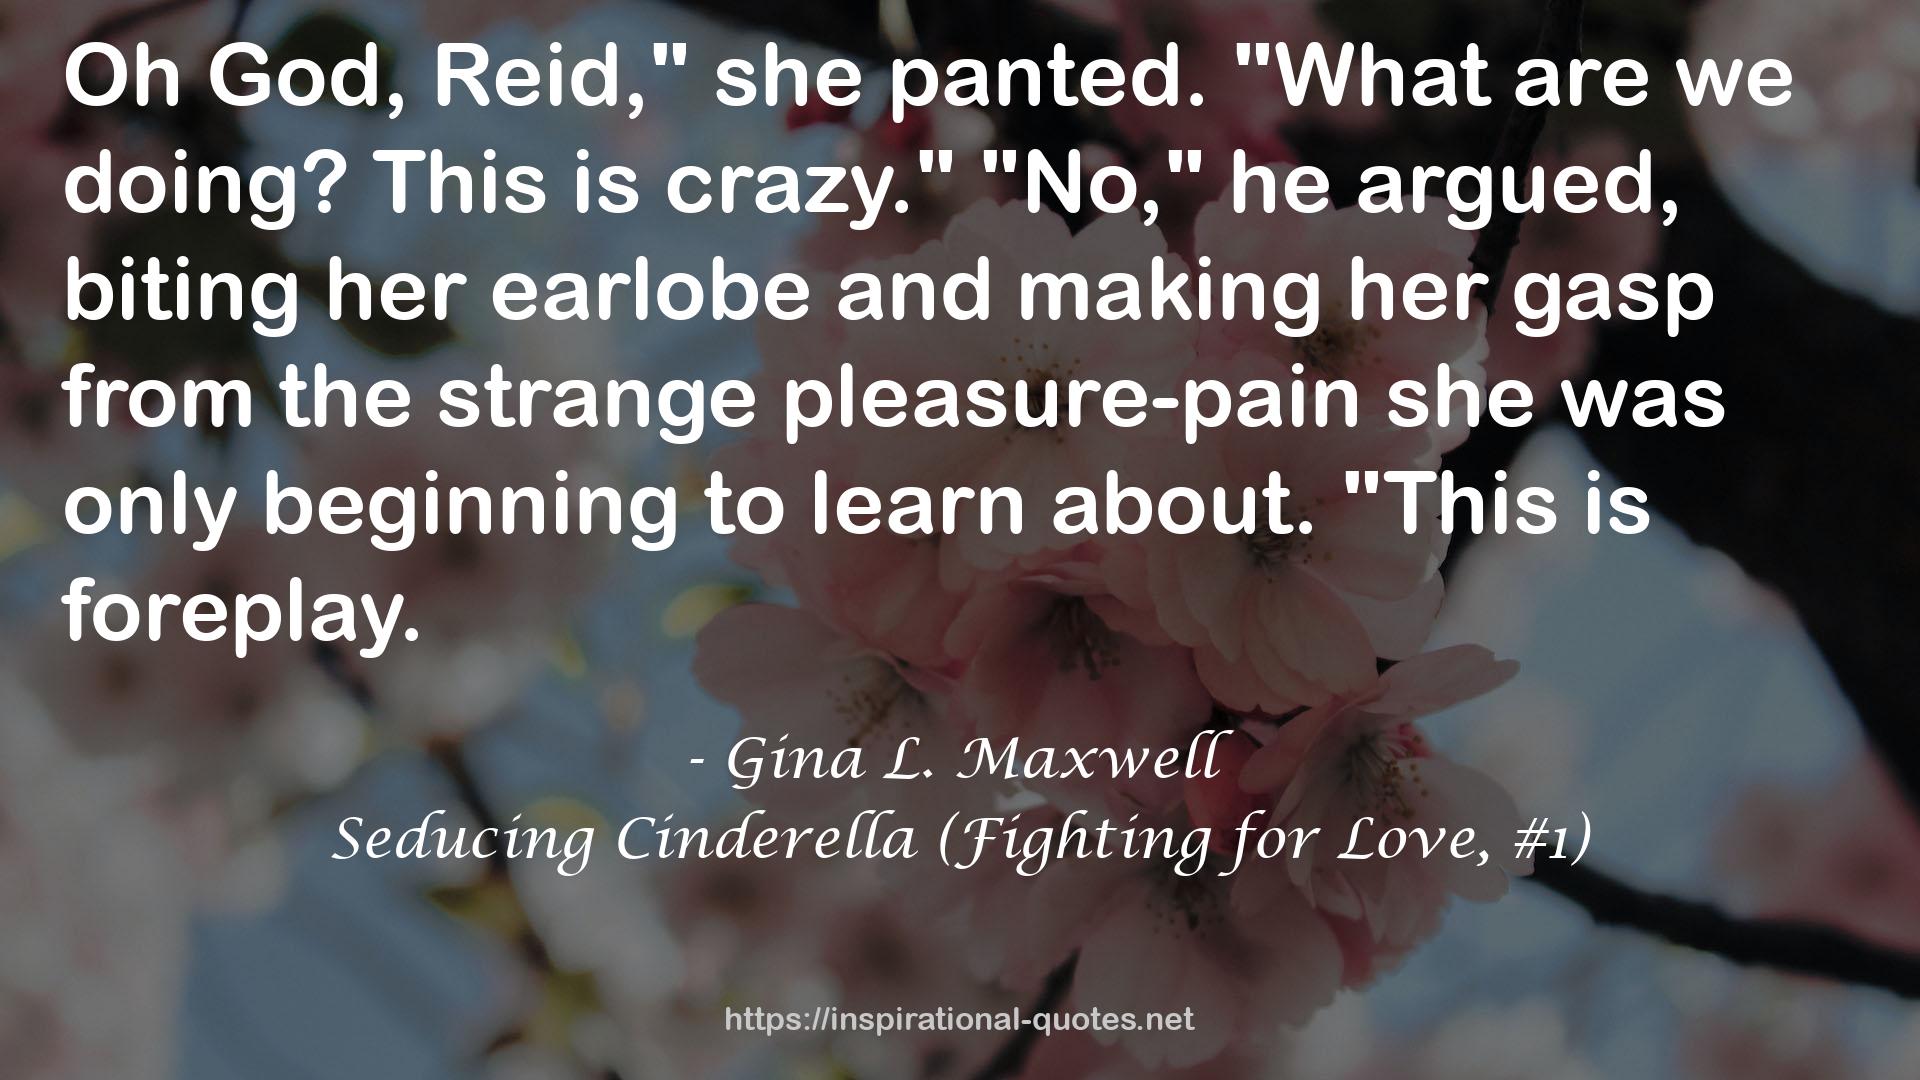 Seducing Cinderella (Fighting for Love, #1) QUOTES